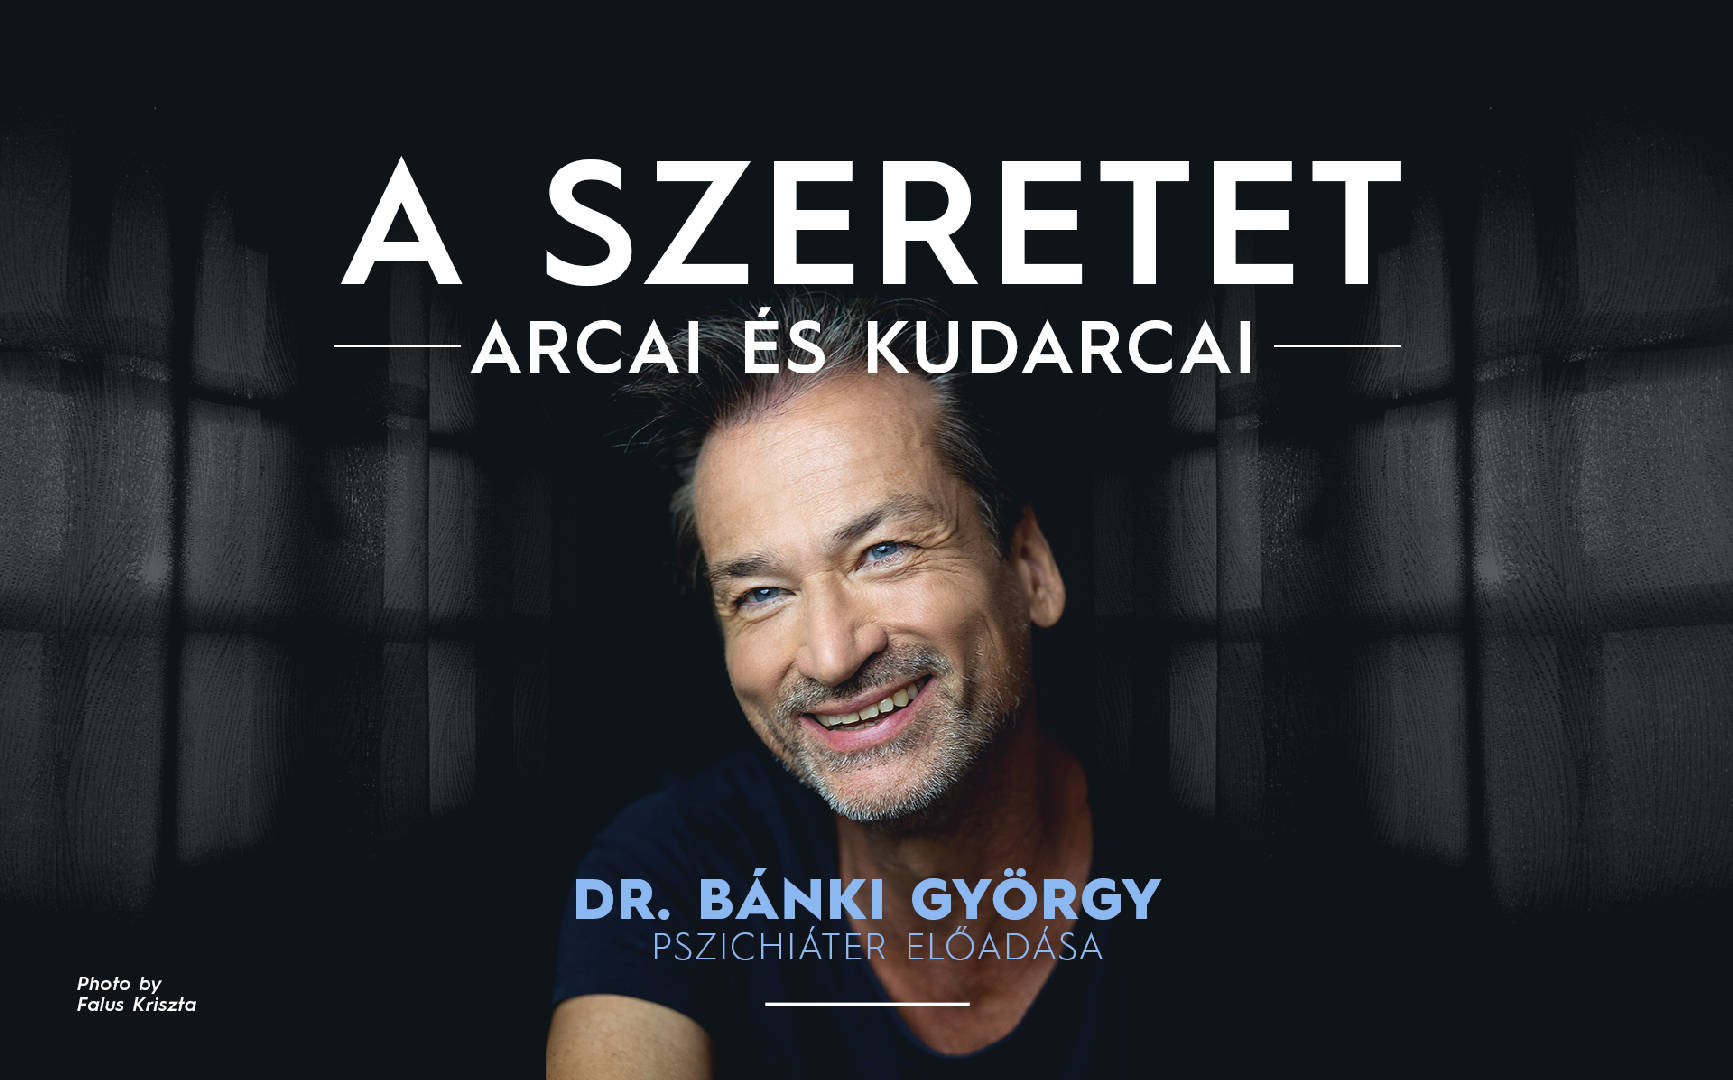 A szeretet arcai és kudarcai - EGER - Dr. Bánki György pszichiáter előadása